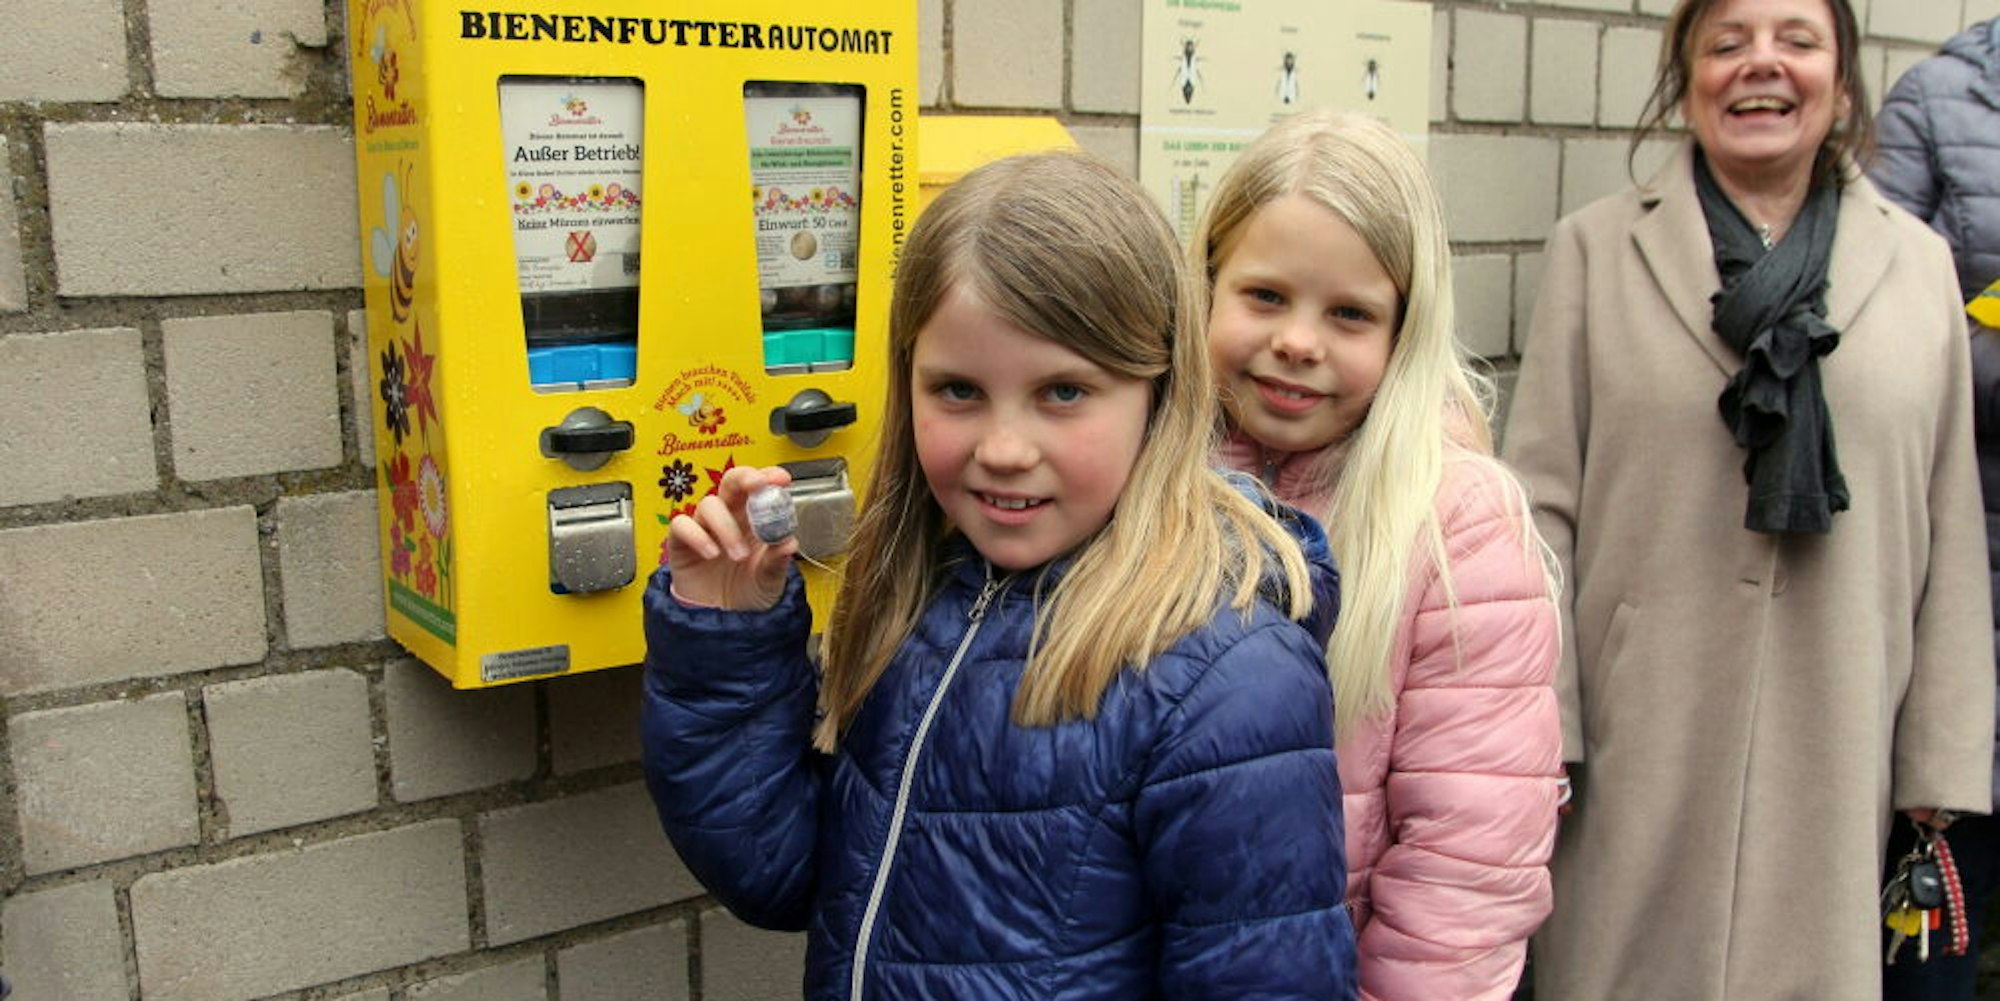 Lena und Pia finden Bienen süß. Die beiden freuen sich über den Bienenfutter-Automaten in Brauweiler.